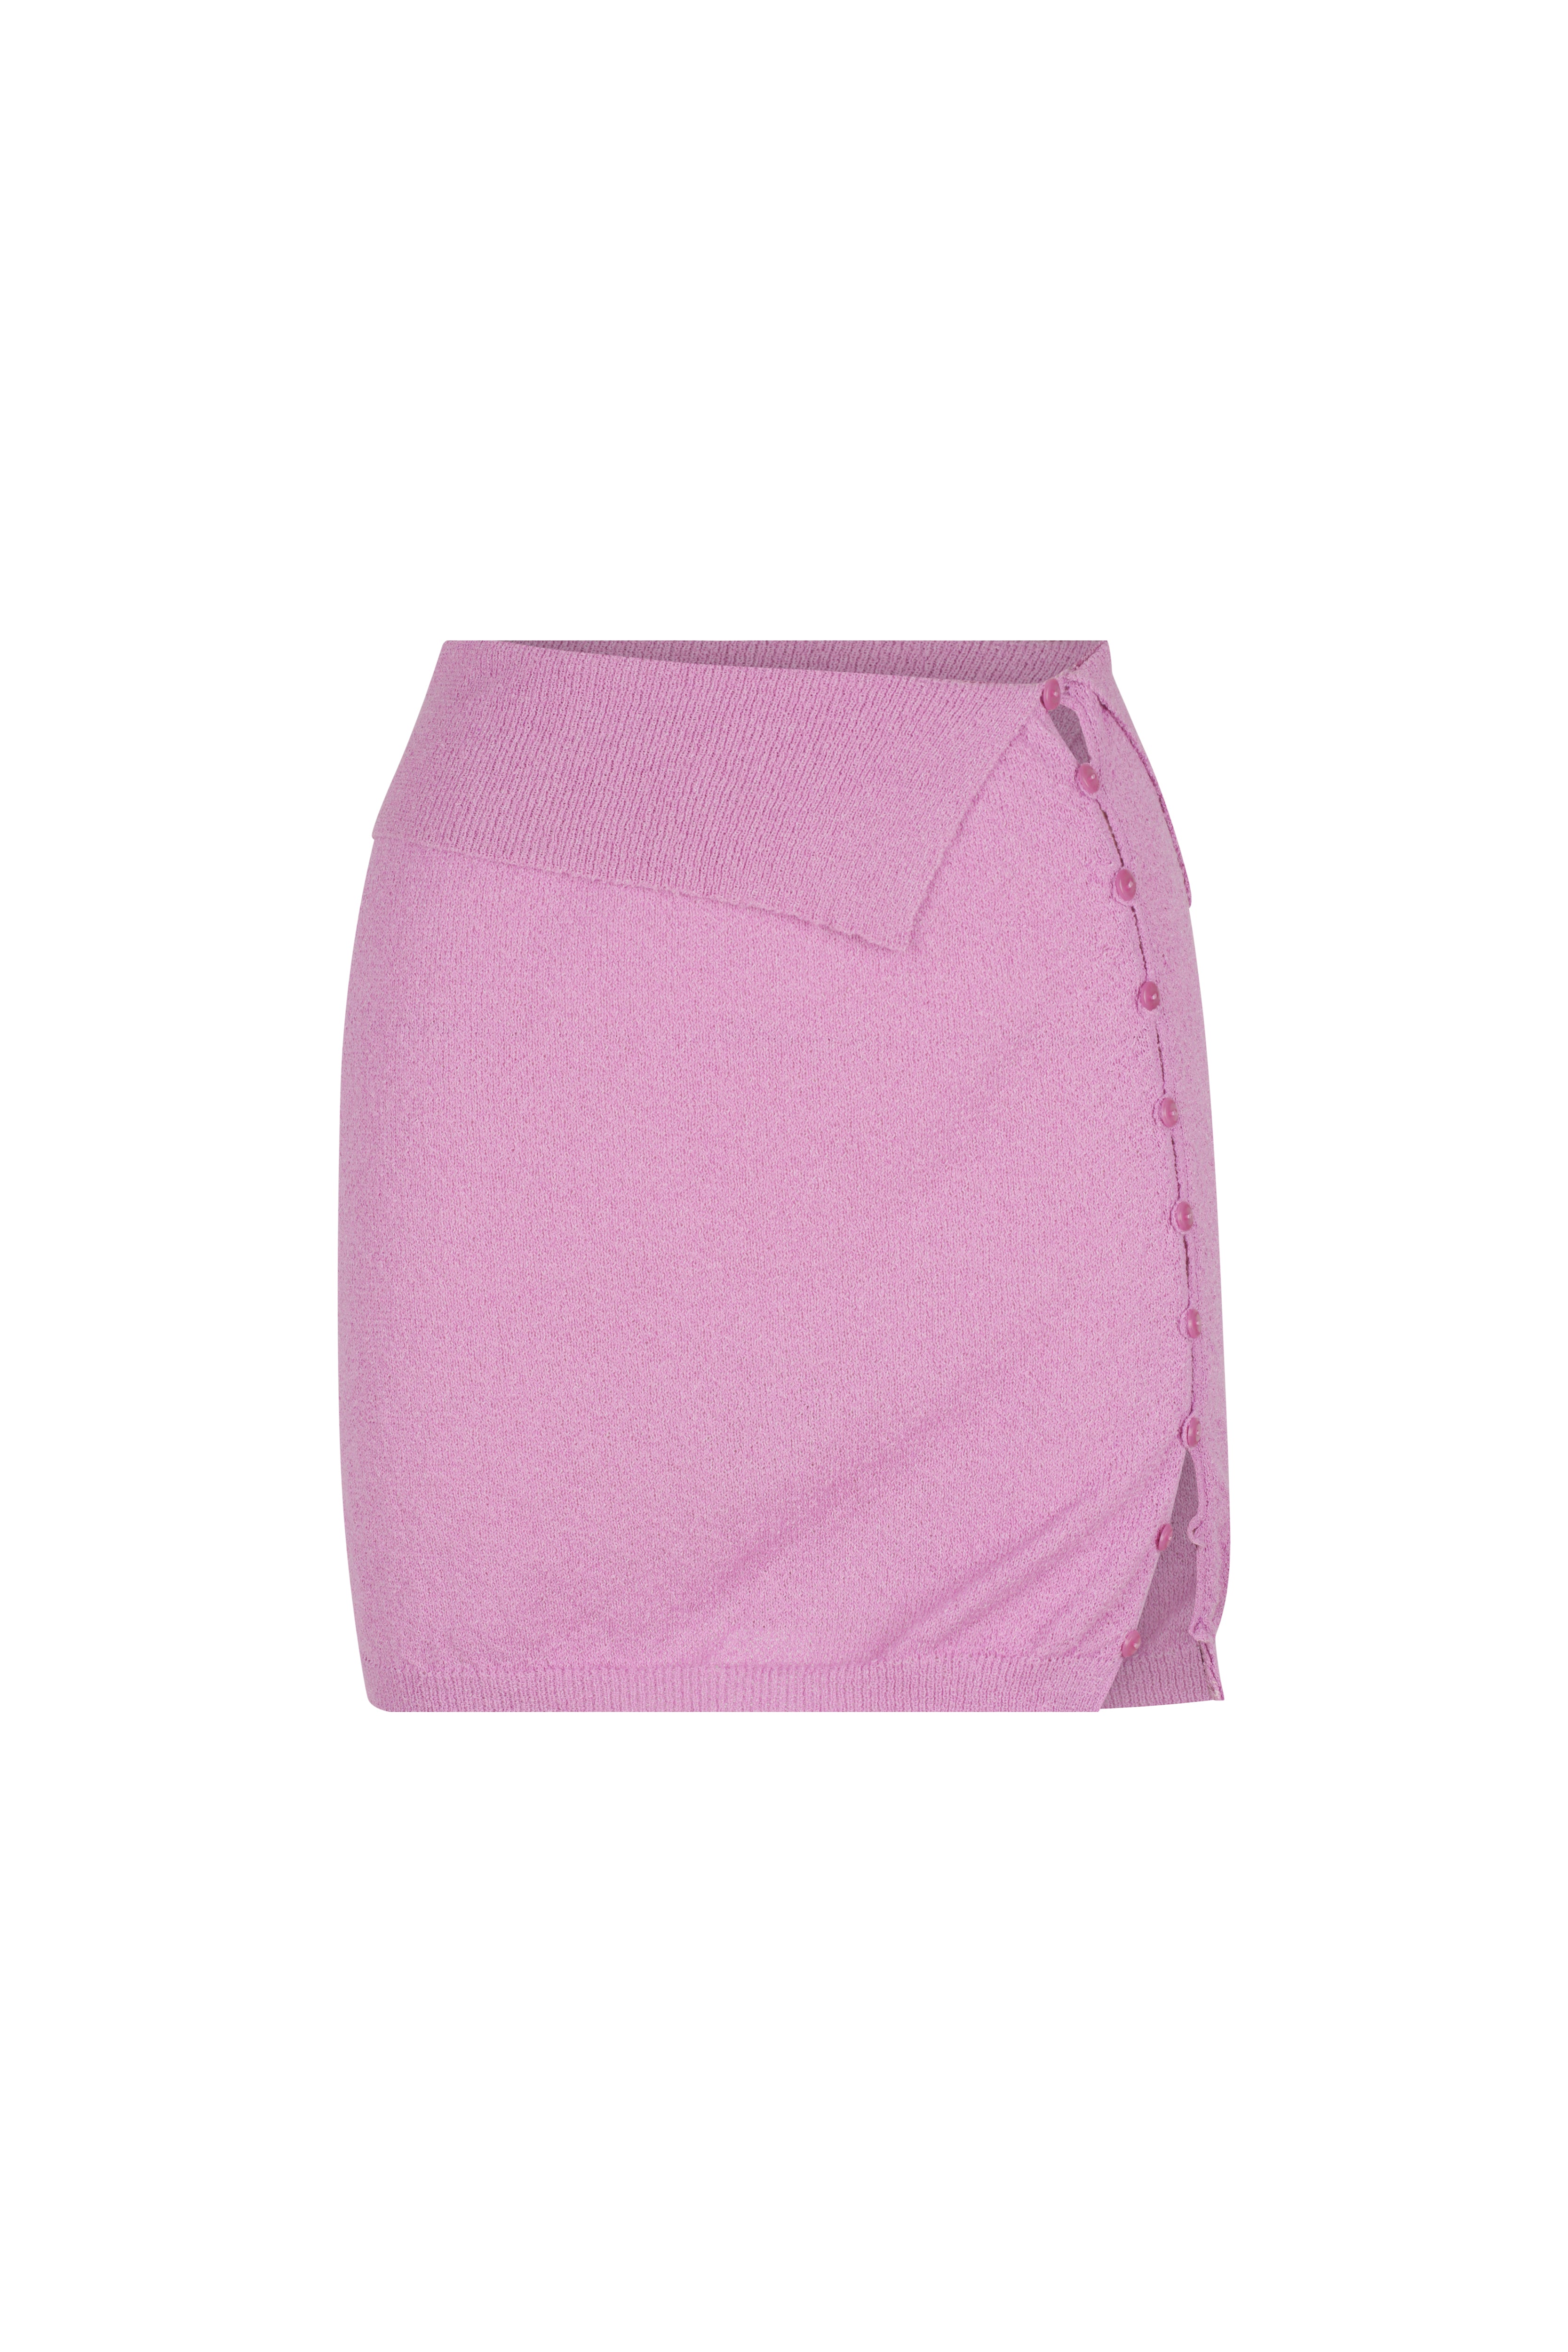 Minogue Knit Mini Skirt // Lilac